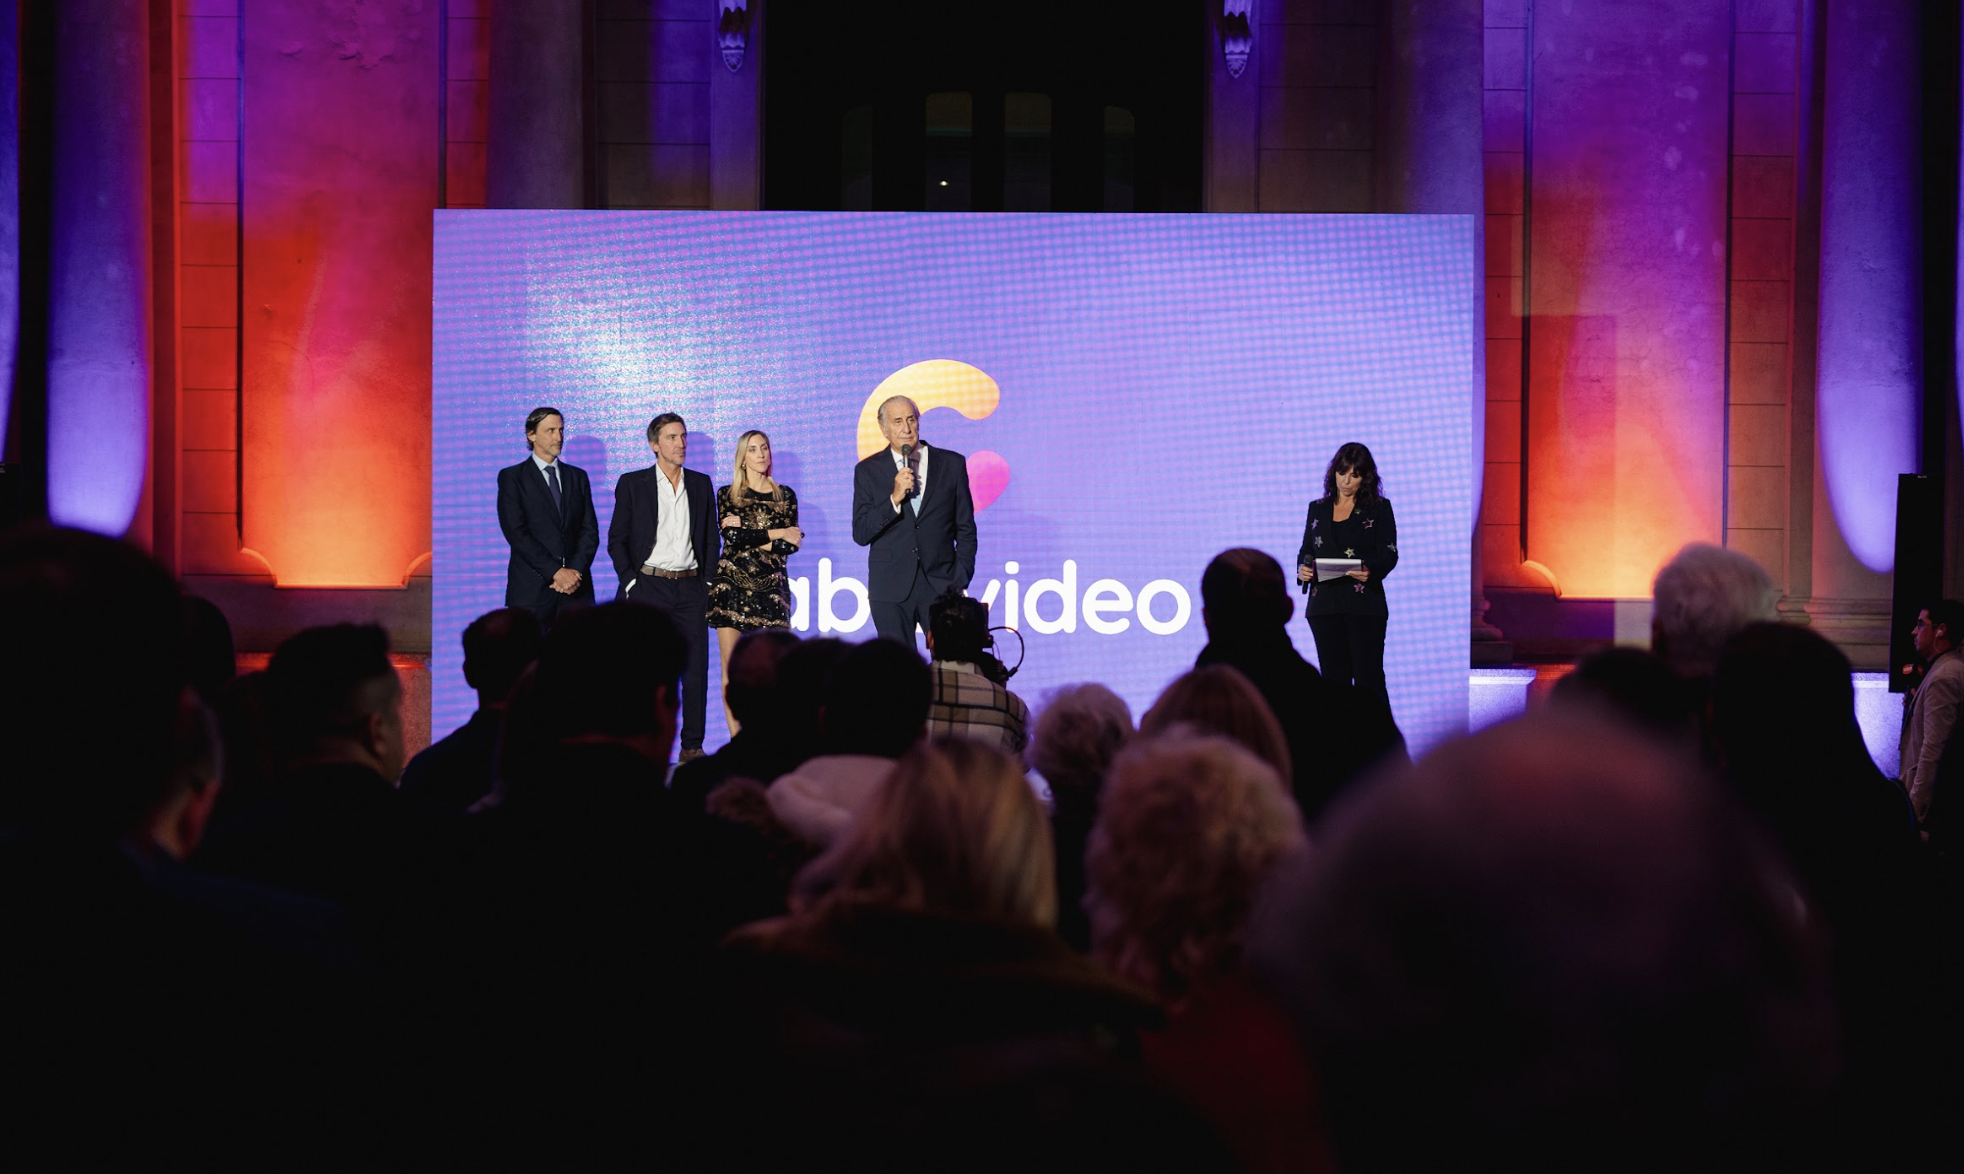 El presidente de Cablevideo, Juan Antonio Priano, junto a sus hiijos Martín, Francisco y Virginia en la presentación de la nueva imagen corporativa de la empresa.